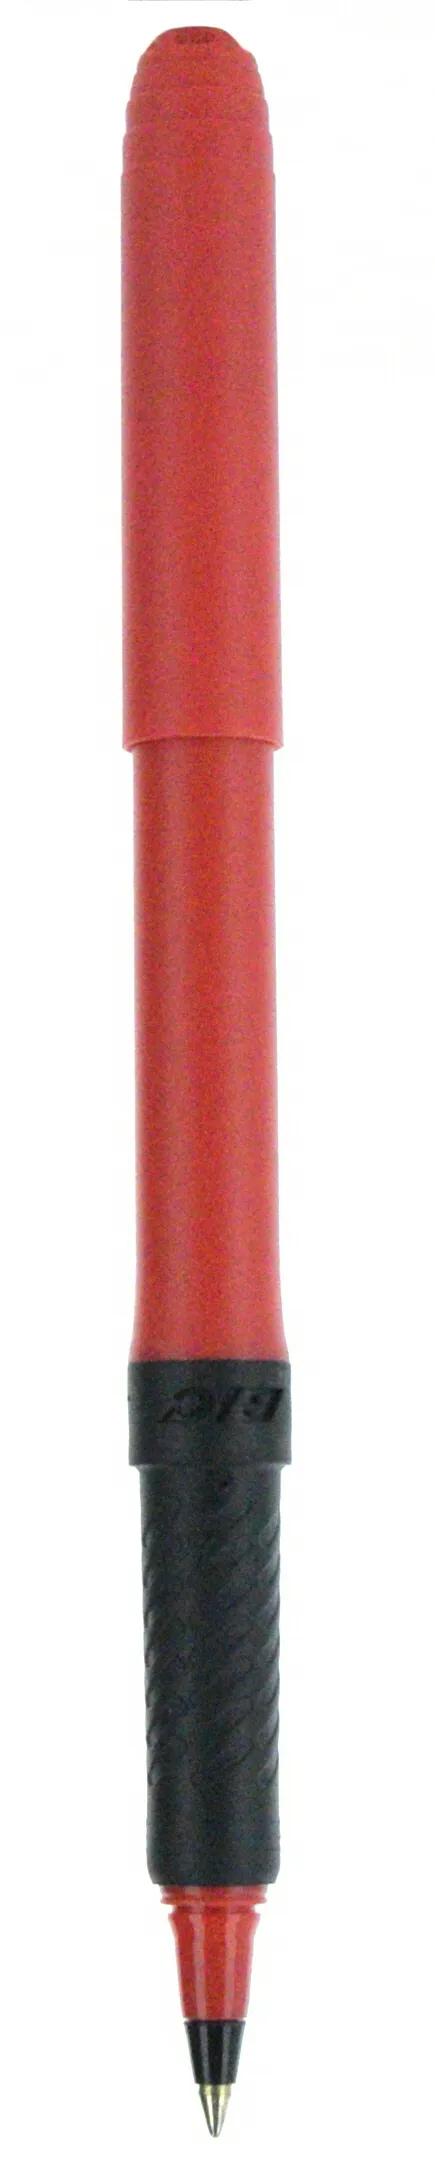 BIC® Grip Roller Pen 89 of 147